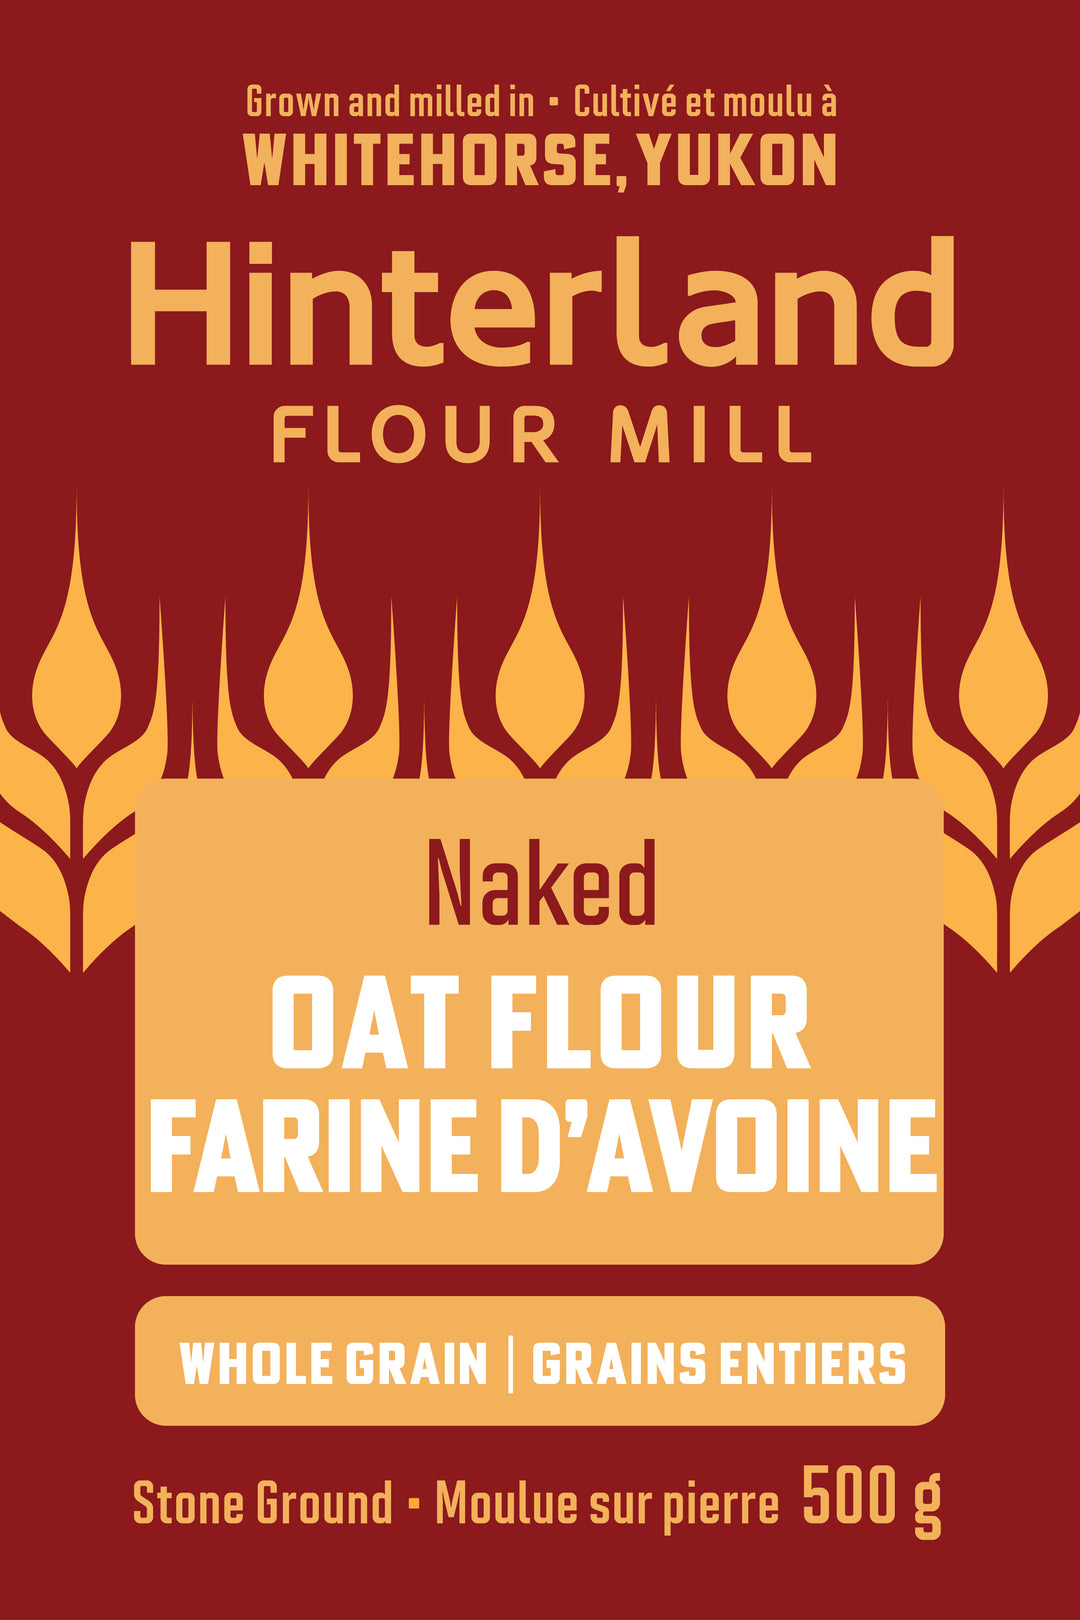 Naked Oat Flour